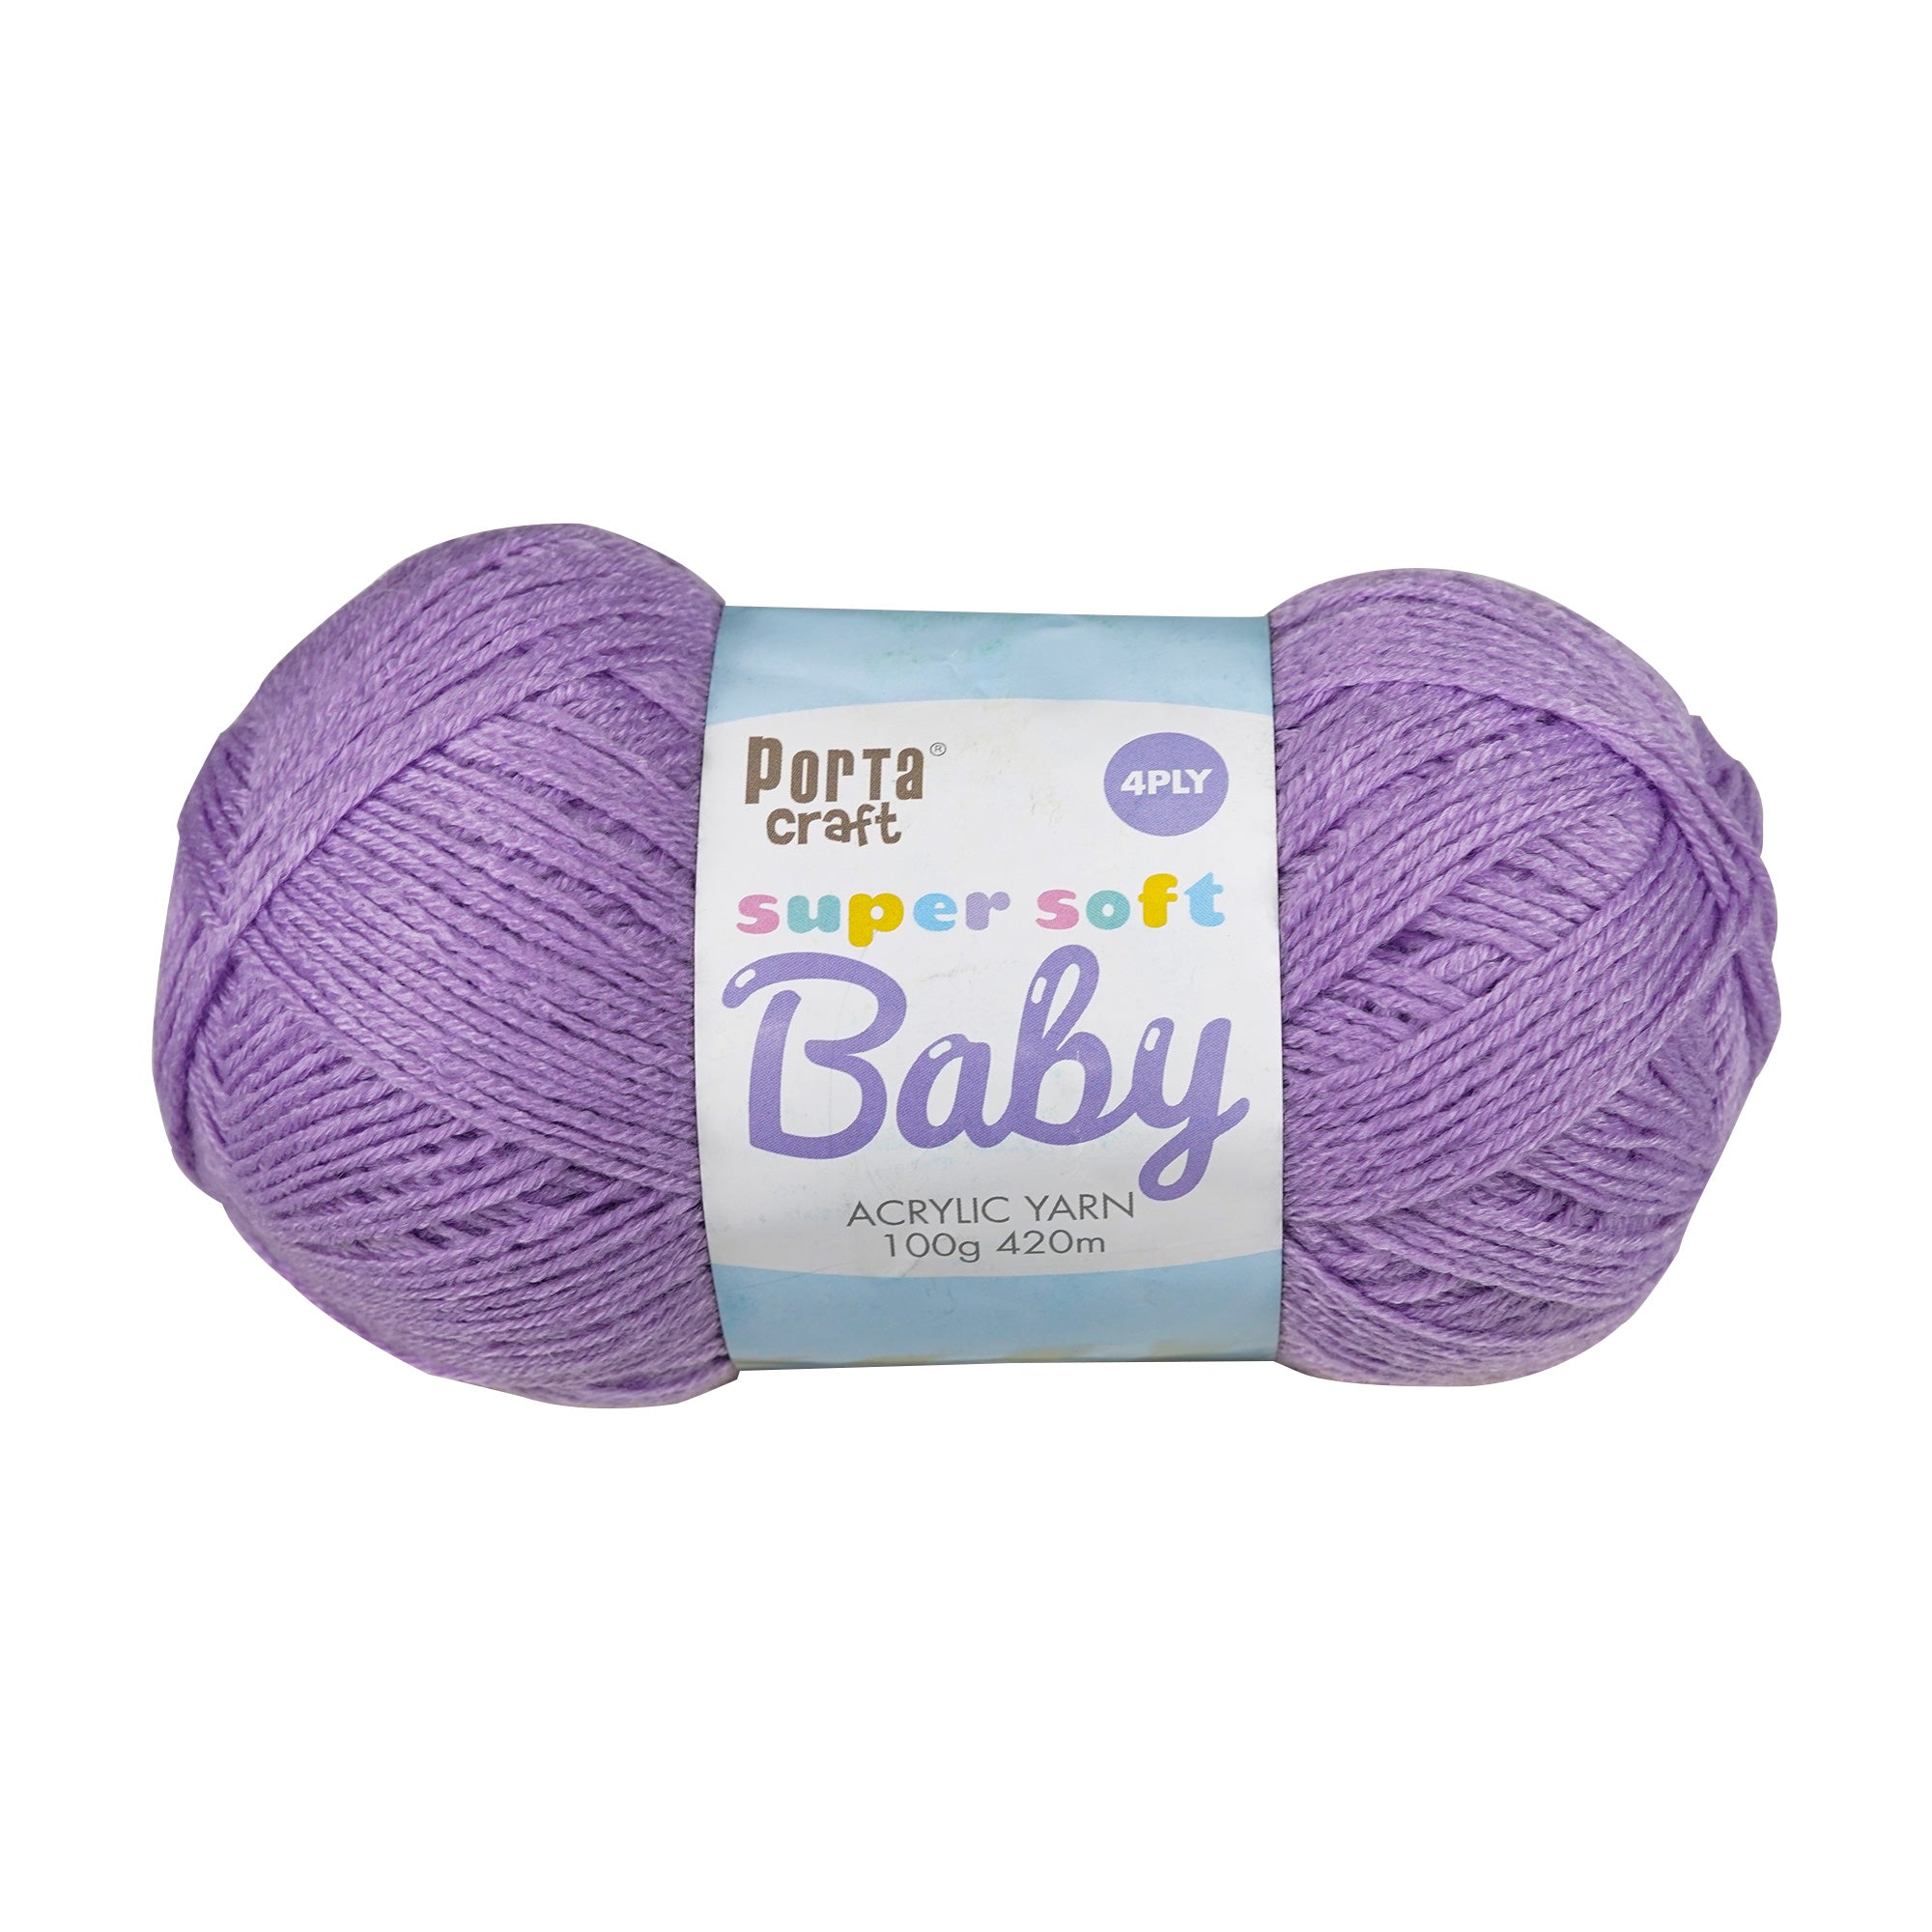 Porta Craft Super Soft Baby Acrylic Yarn 100% 100Gm 420M 4Ply Soft Lilac - VC